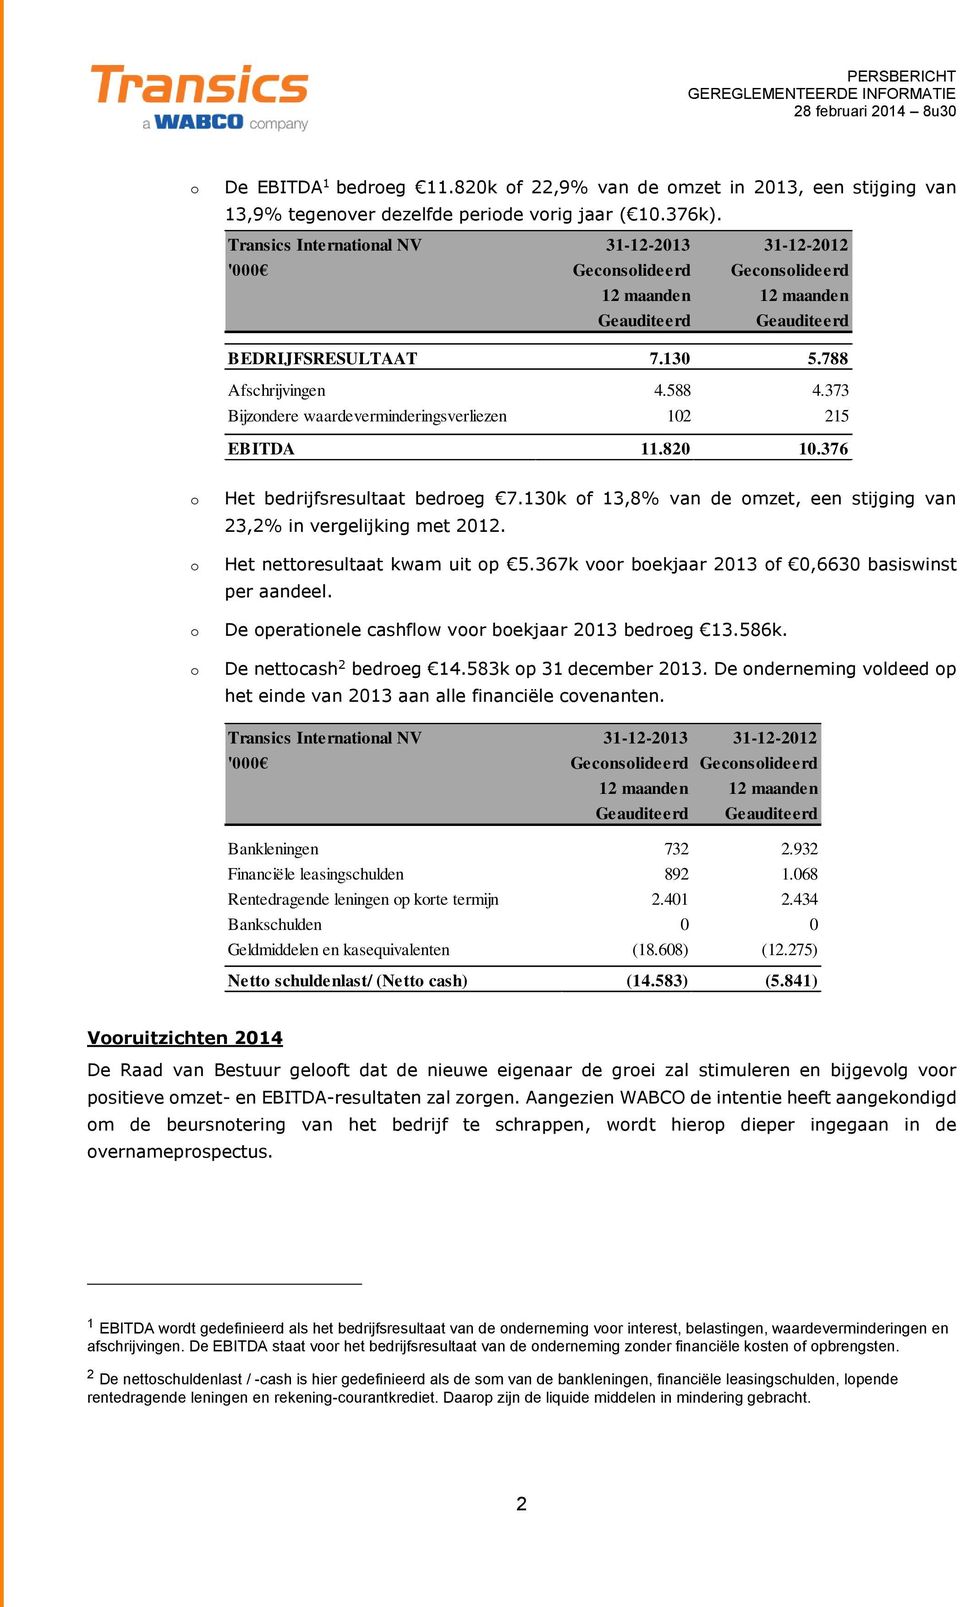 376 Het bedrijfsresultaat bedreg 7.130k f 13,8% van de mzet, een stijging van 23,2% in vergelijking met 2012. Het nettresultaat kwam uit p 5.367k vr bekjaar 2013 f 0,6630 basiswinst per aandeel.